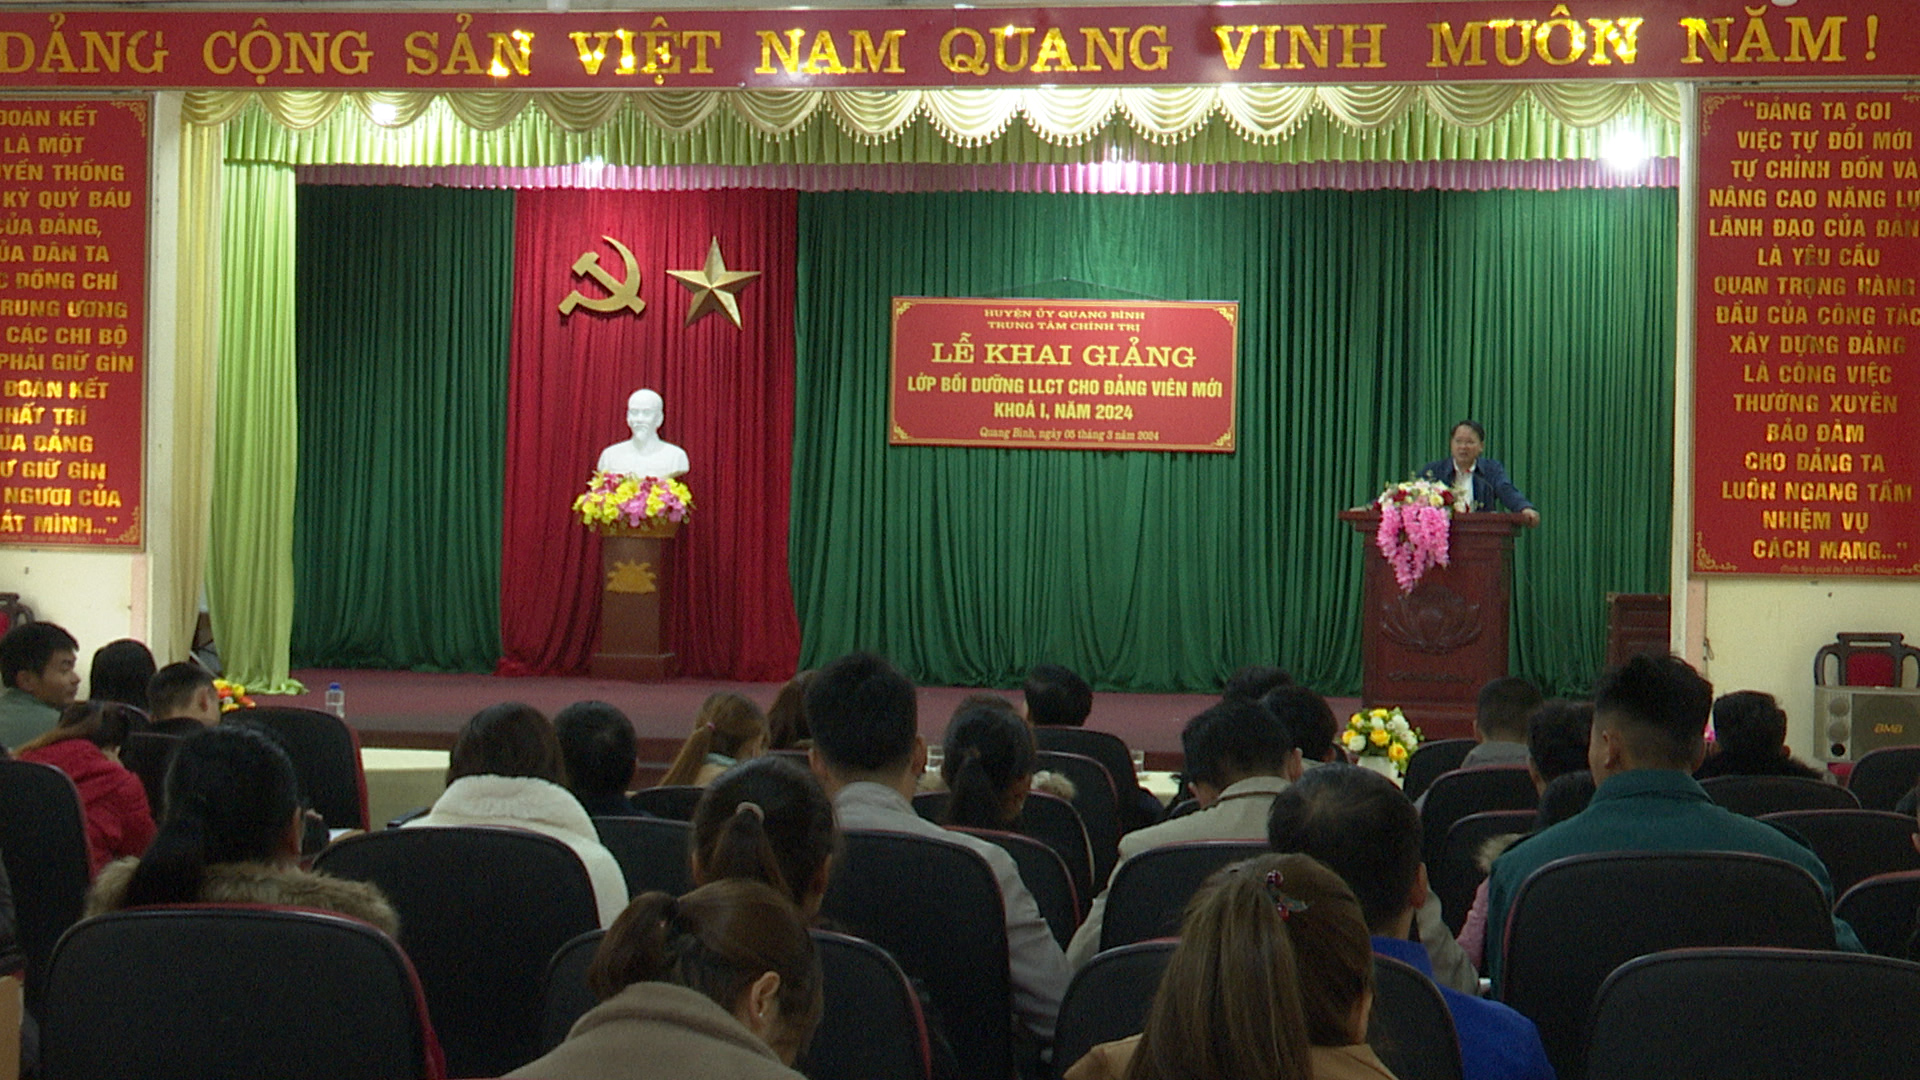 Quang Bình khai giảng Lớp bồi dưỡng LLCT cho đảng viên mới khóa I, năm 2024